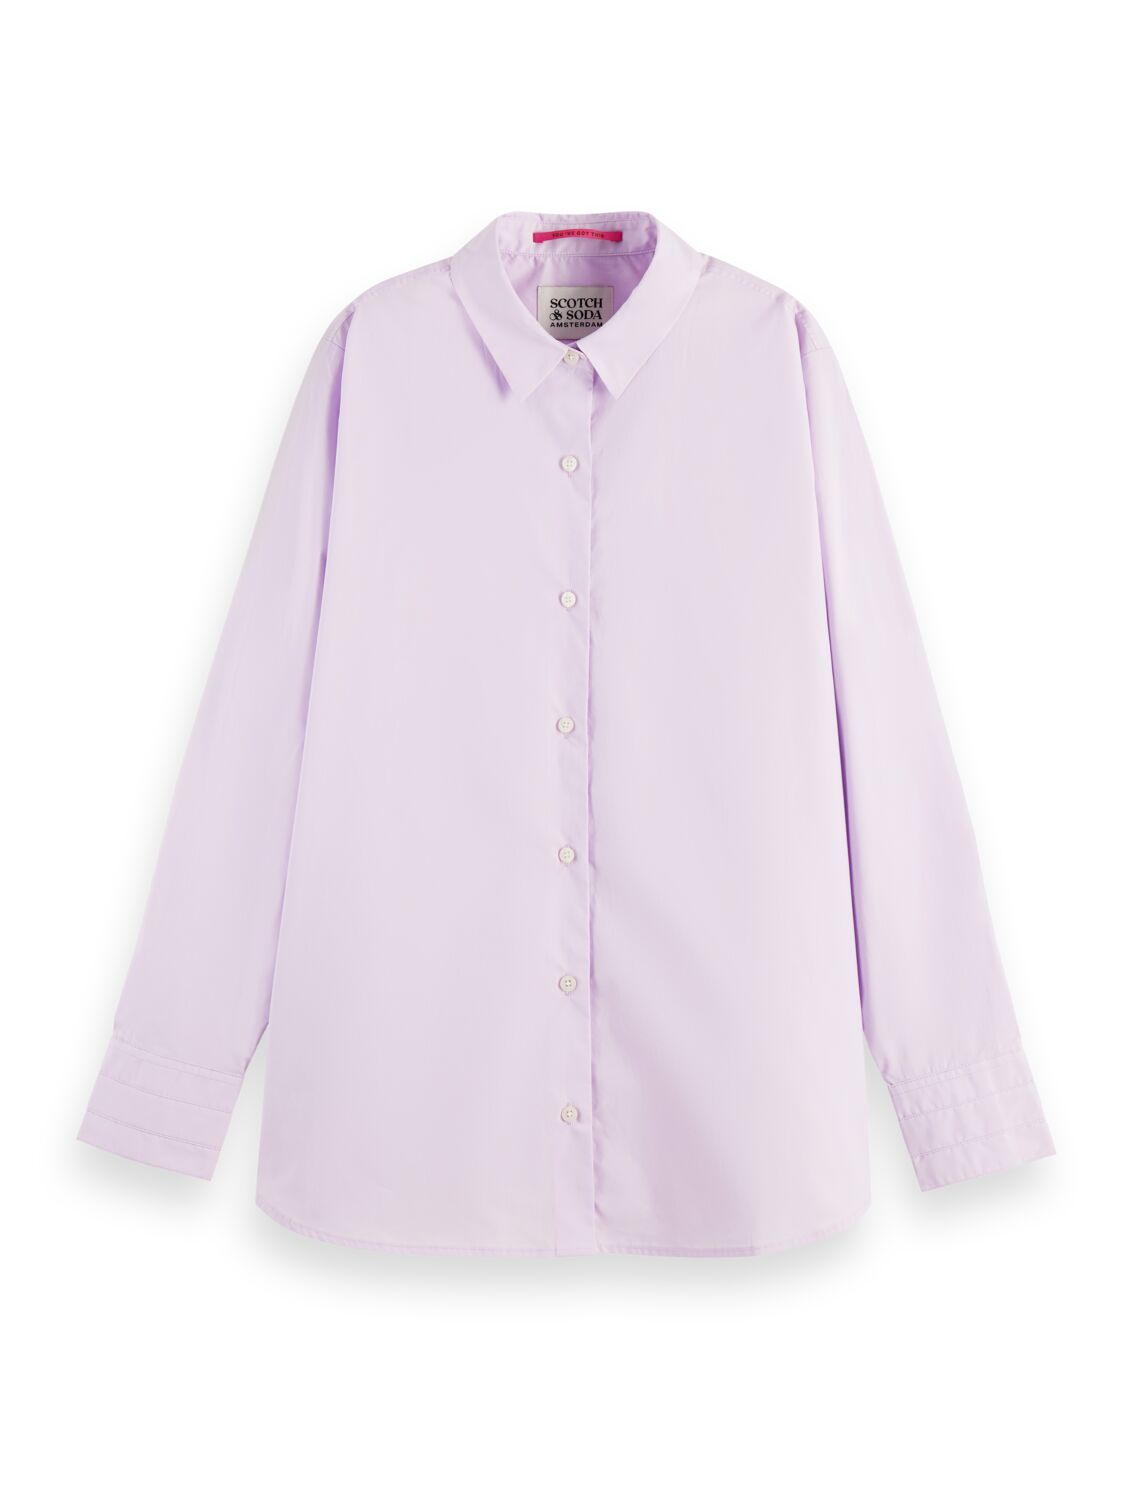 Рубашка женская Scotch & Soda 167826/1179 фиолетовая S